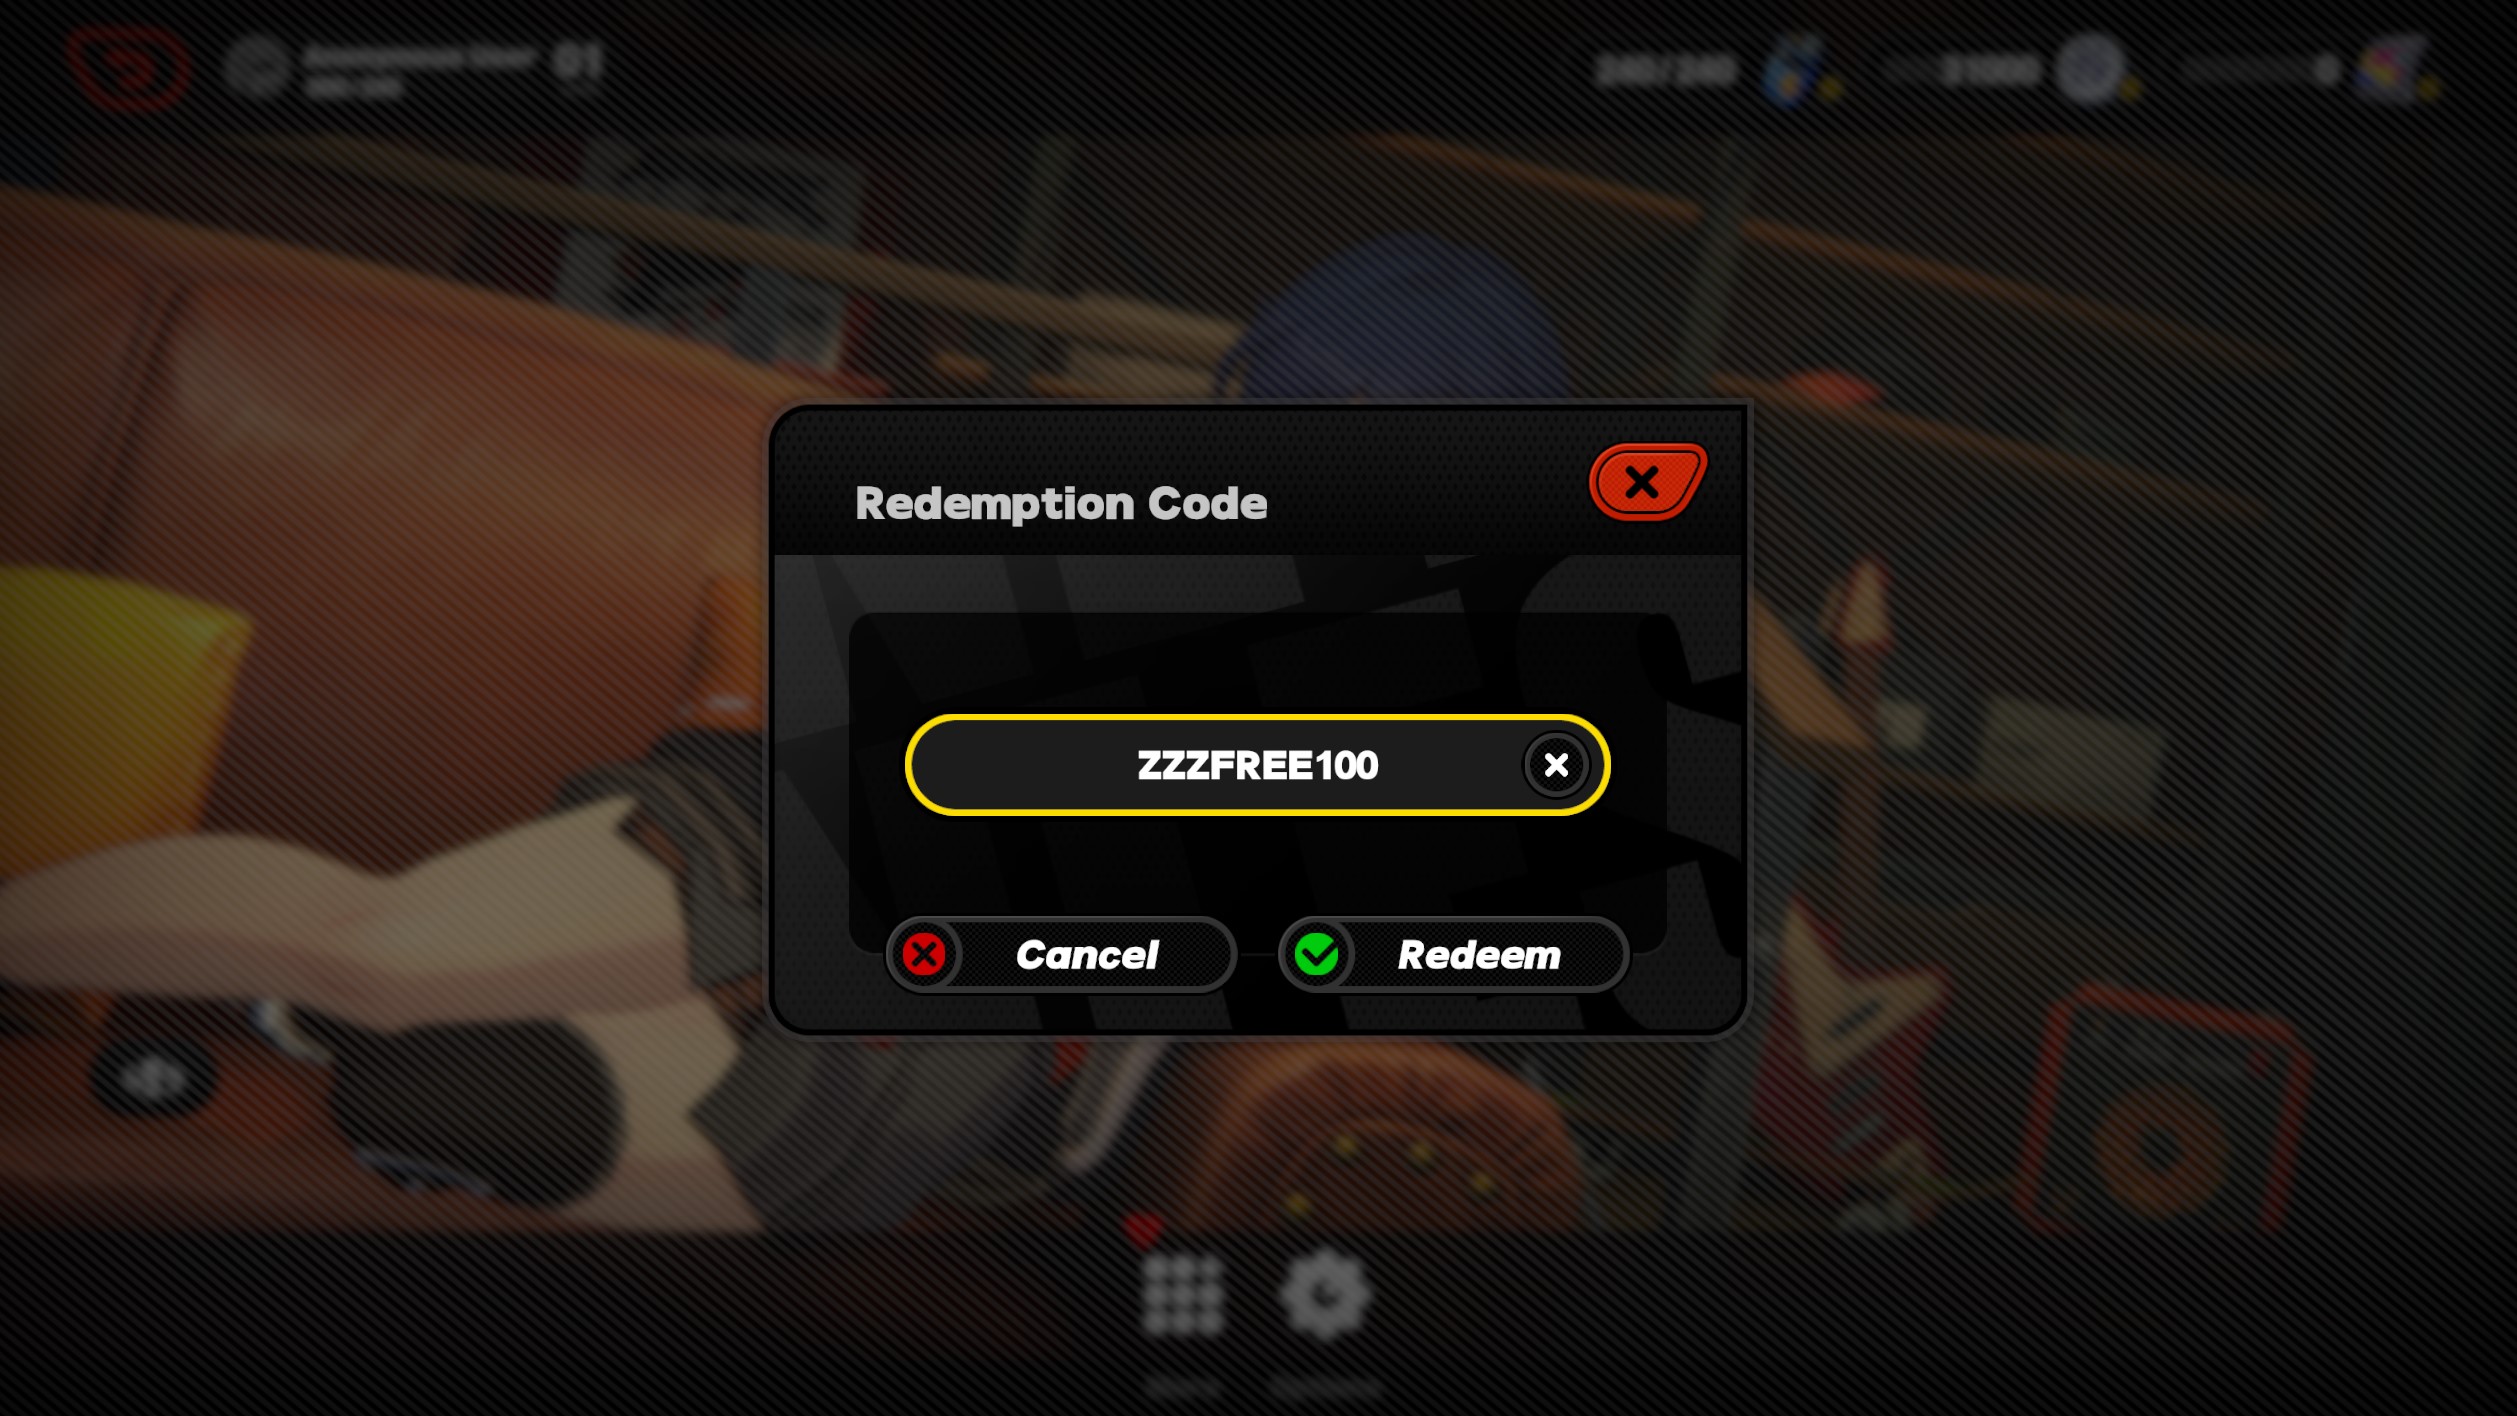 ZZZ code redemption box